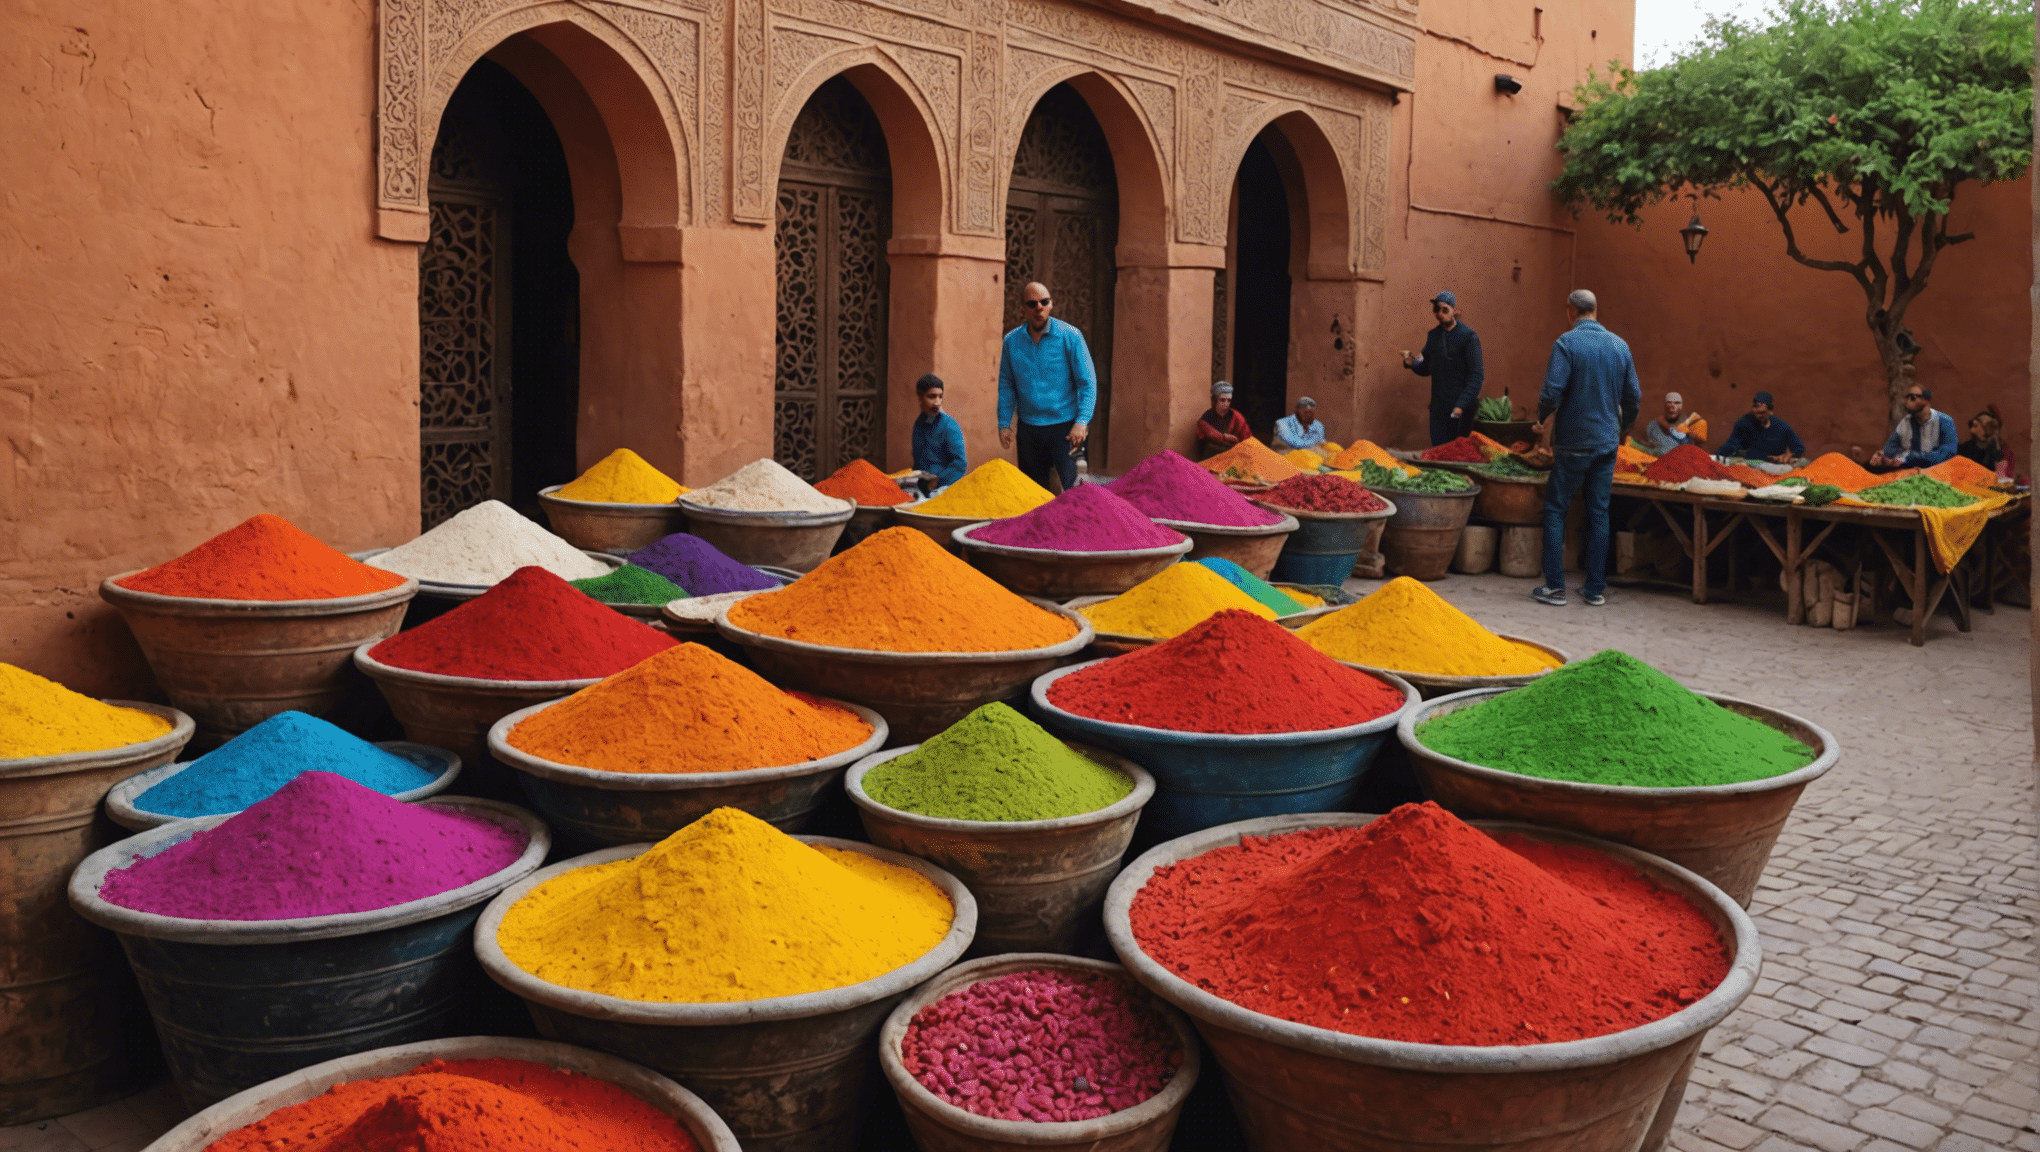 ¡Descubre actividades divertidas y familiares en Marrakech con estas increíbles opciones!